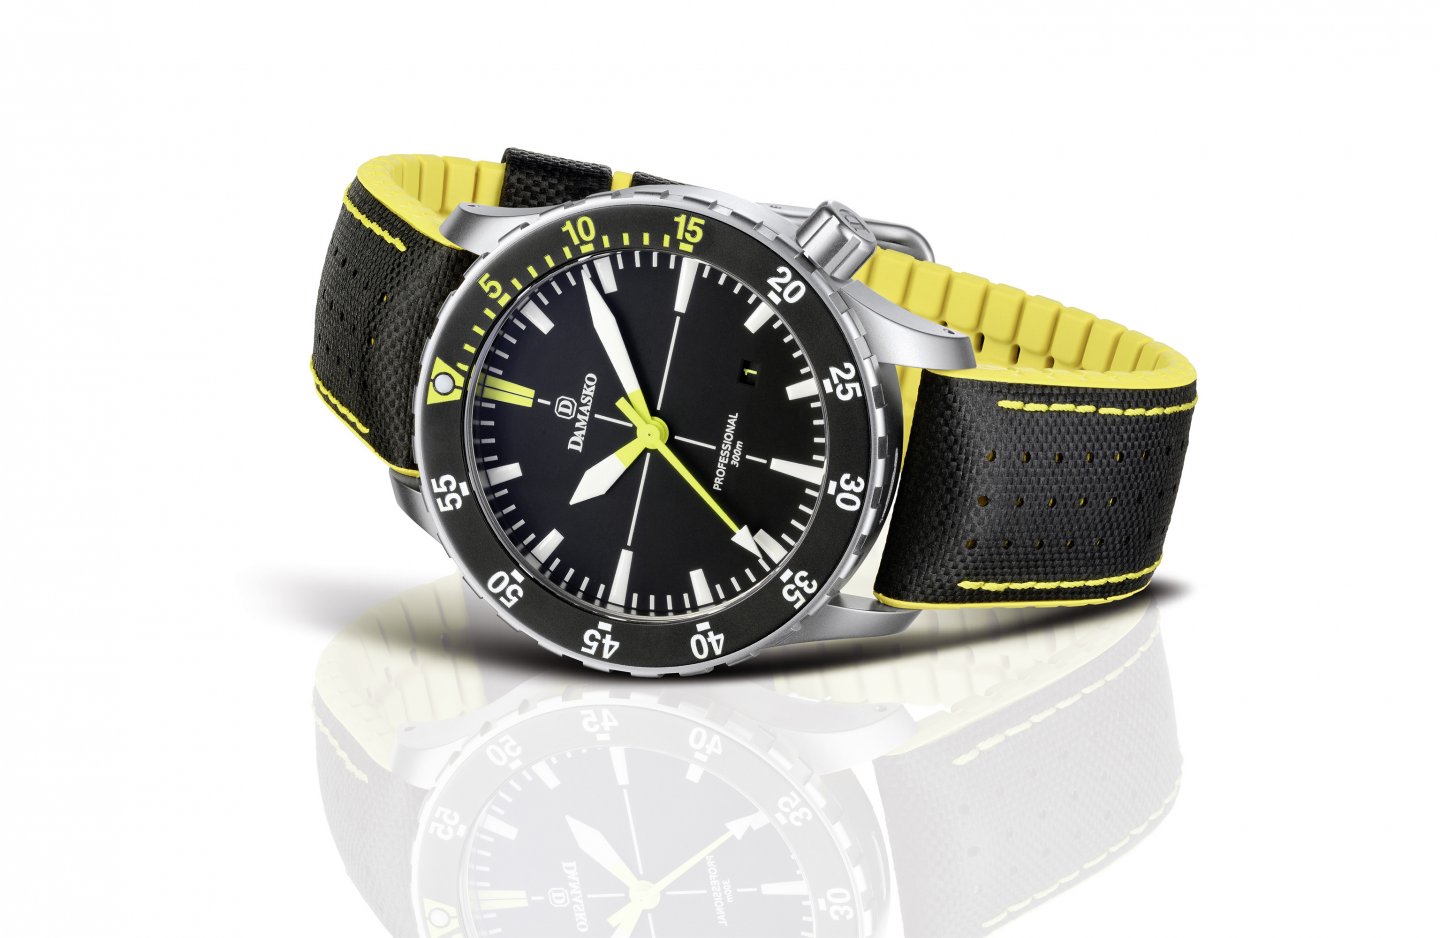 ドイツ時計メーカーDAMASKO(ダマスコが、海水・水圧に強い高耐磁ダイバーウォッチ『ダイバー300M』のカラーバリエーション、ブラックイエローモデルを7/1(水）に国内販売開始